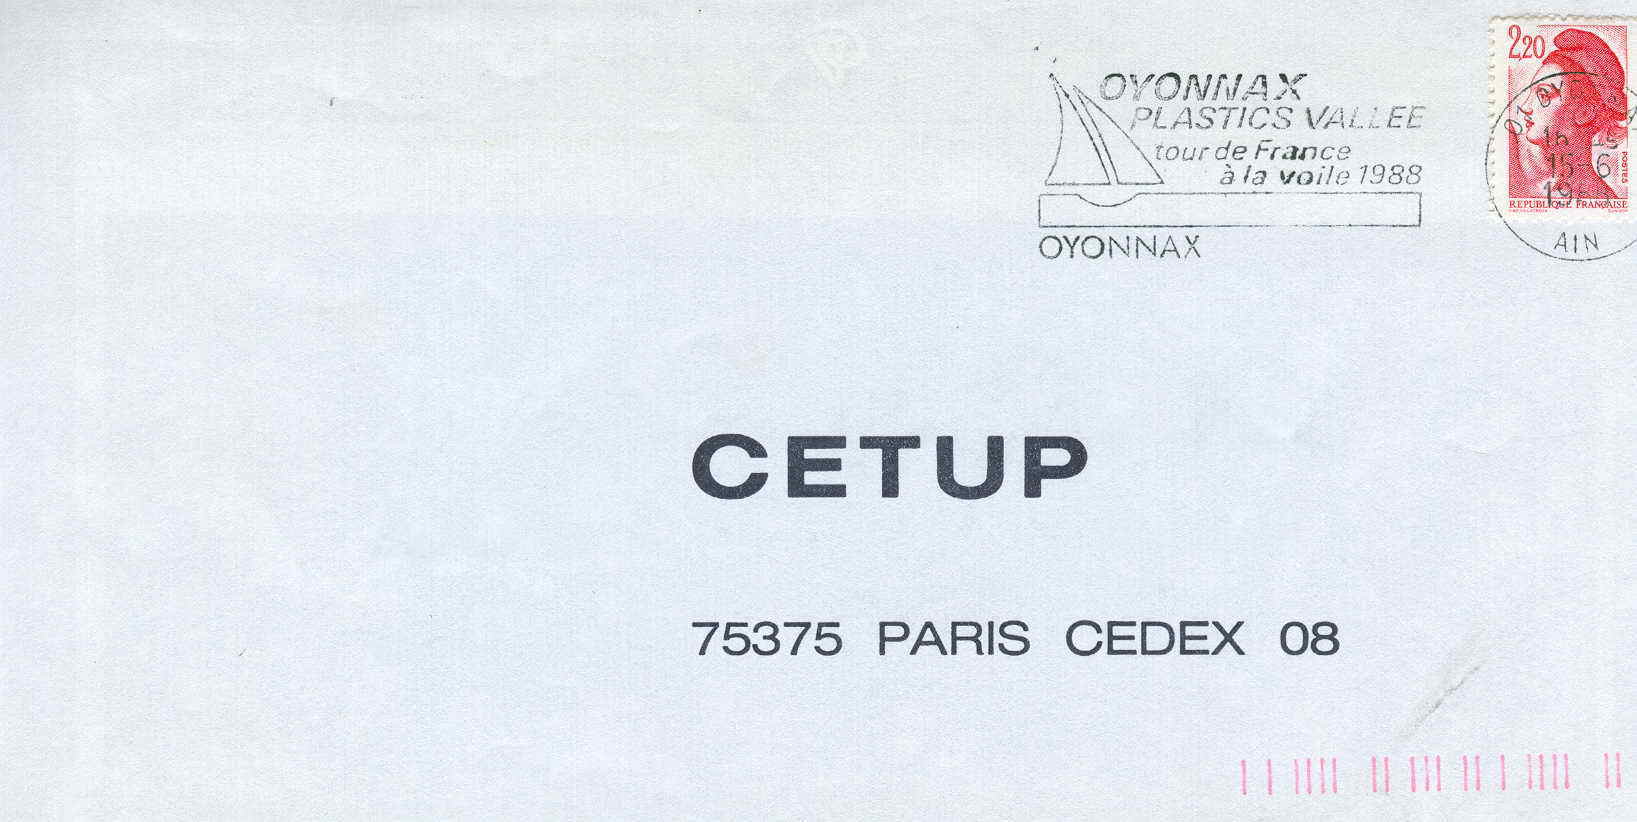 VOILE OBLITERATION TEMPORAIRE TOUR DE FRANCE A LA VOILE 1988 OYONNAX - Vela